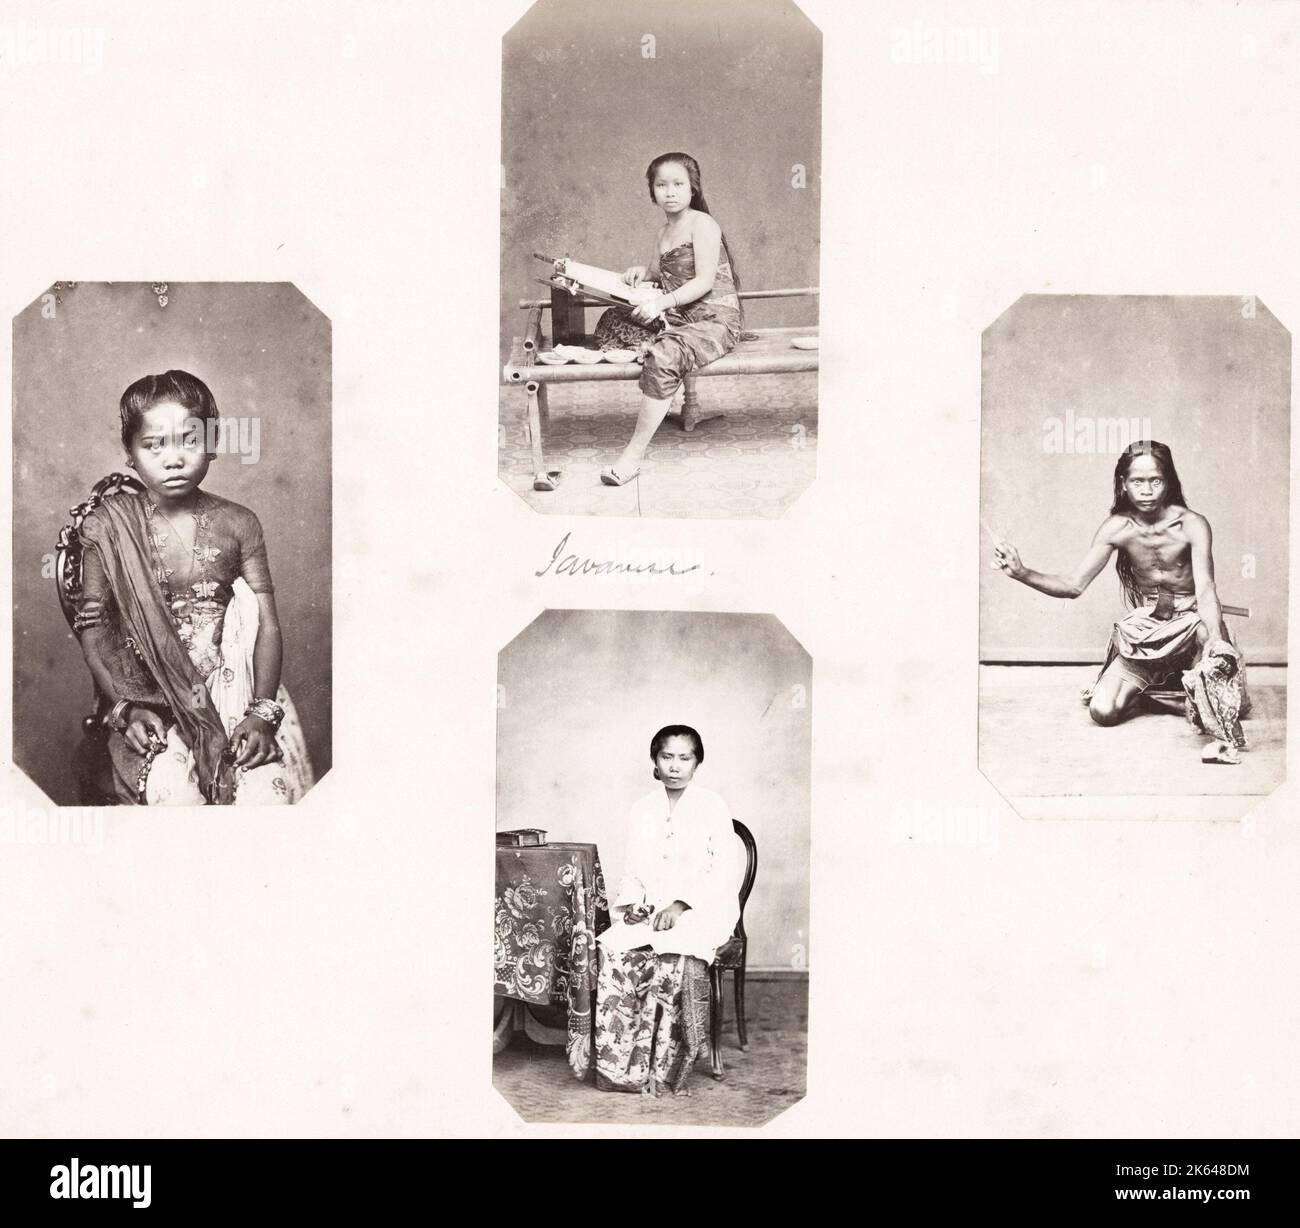 Photographie vintage du XIXe siècle : les « types » ethniques sont conçus pour représenter les caractéristiques raciales plutôt que pour servir de portraits individuels.r Banque D'Images